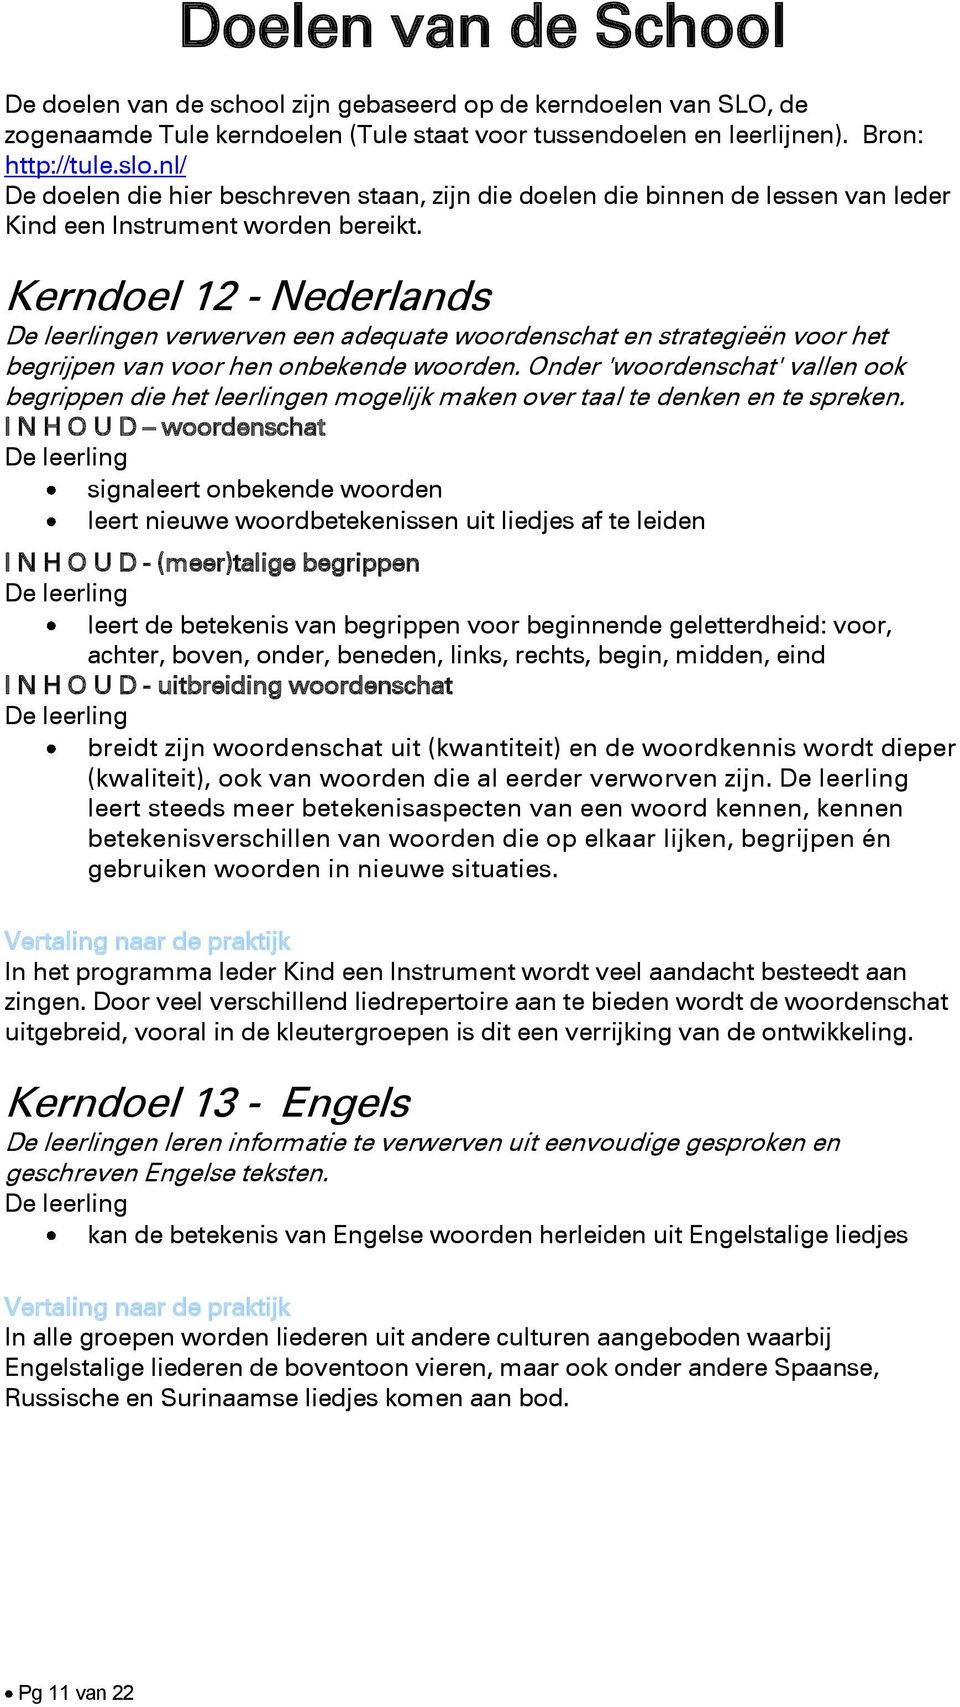 Kerndoel 12 - Nederlands en verwerven een adequate woordenschat en strategieën voor het begrijpen van voor hen onbekende woorden.